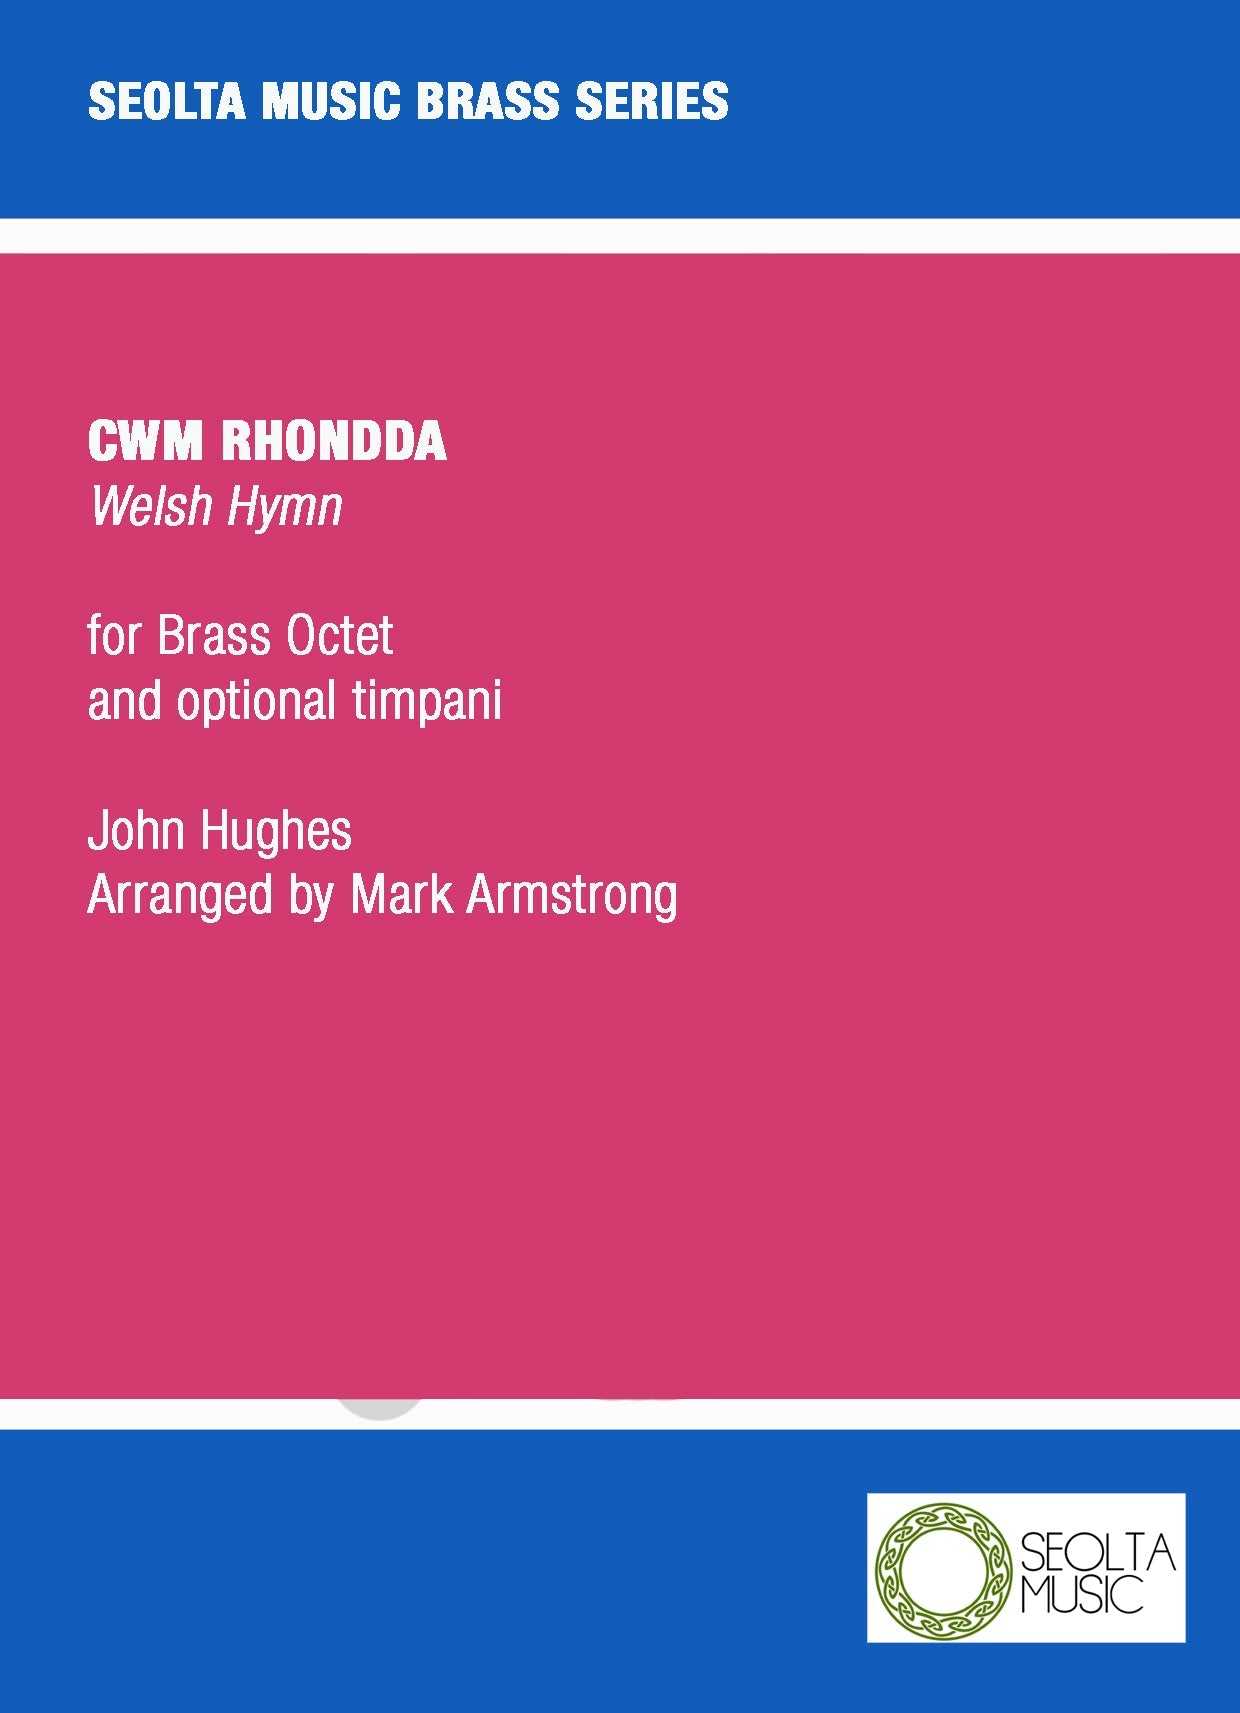 cwm-rhondda-brass-octet-sheet-music